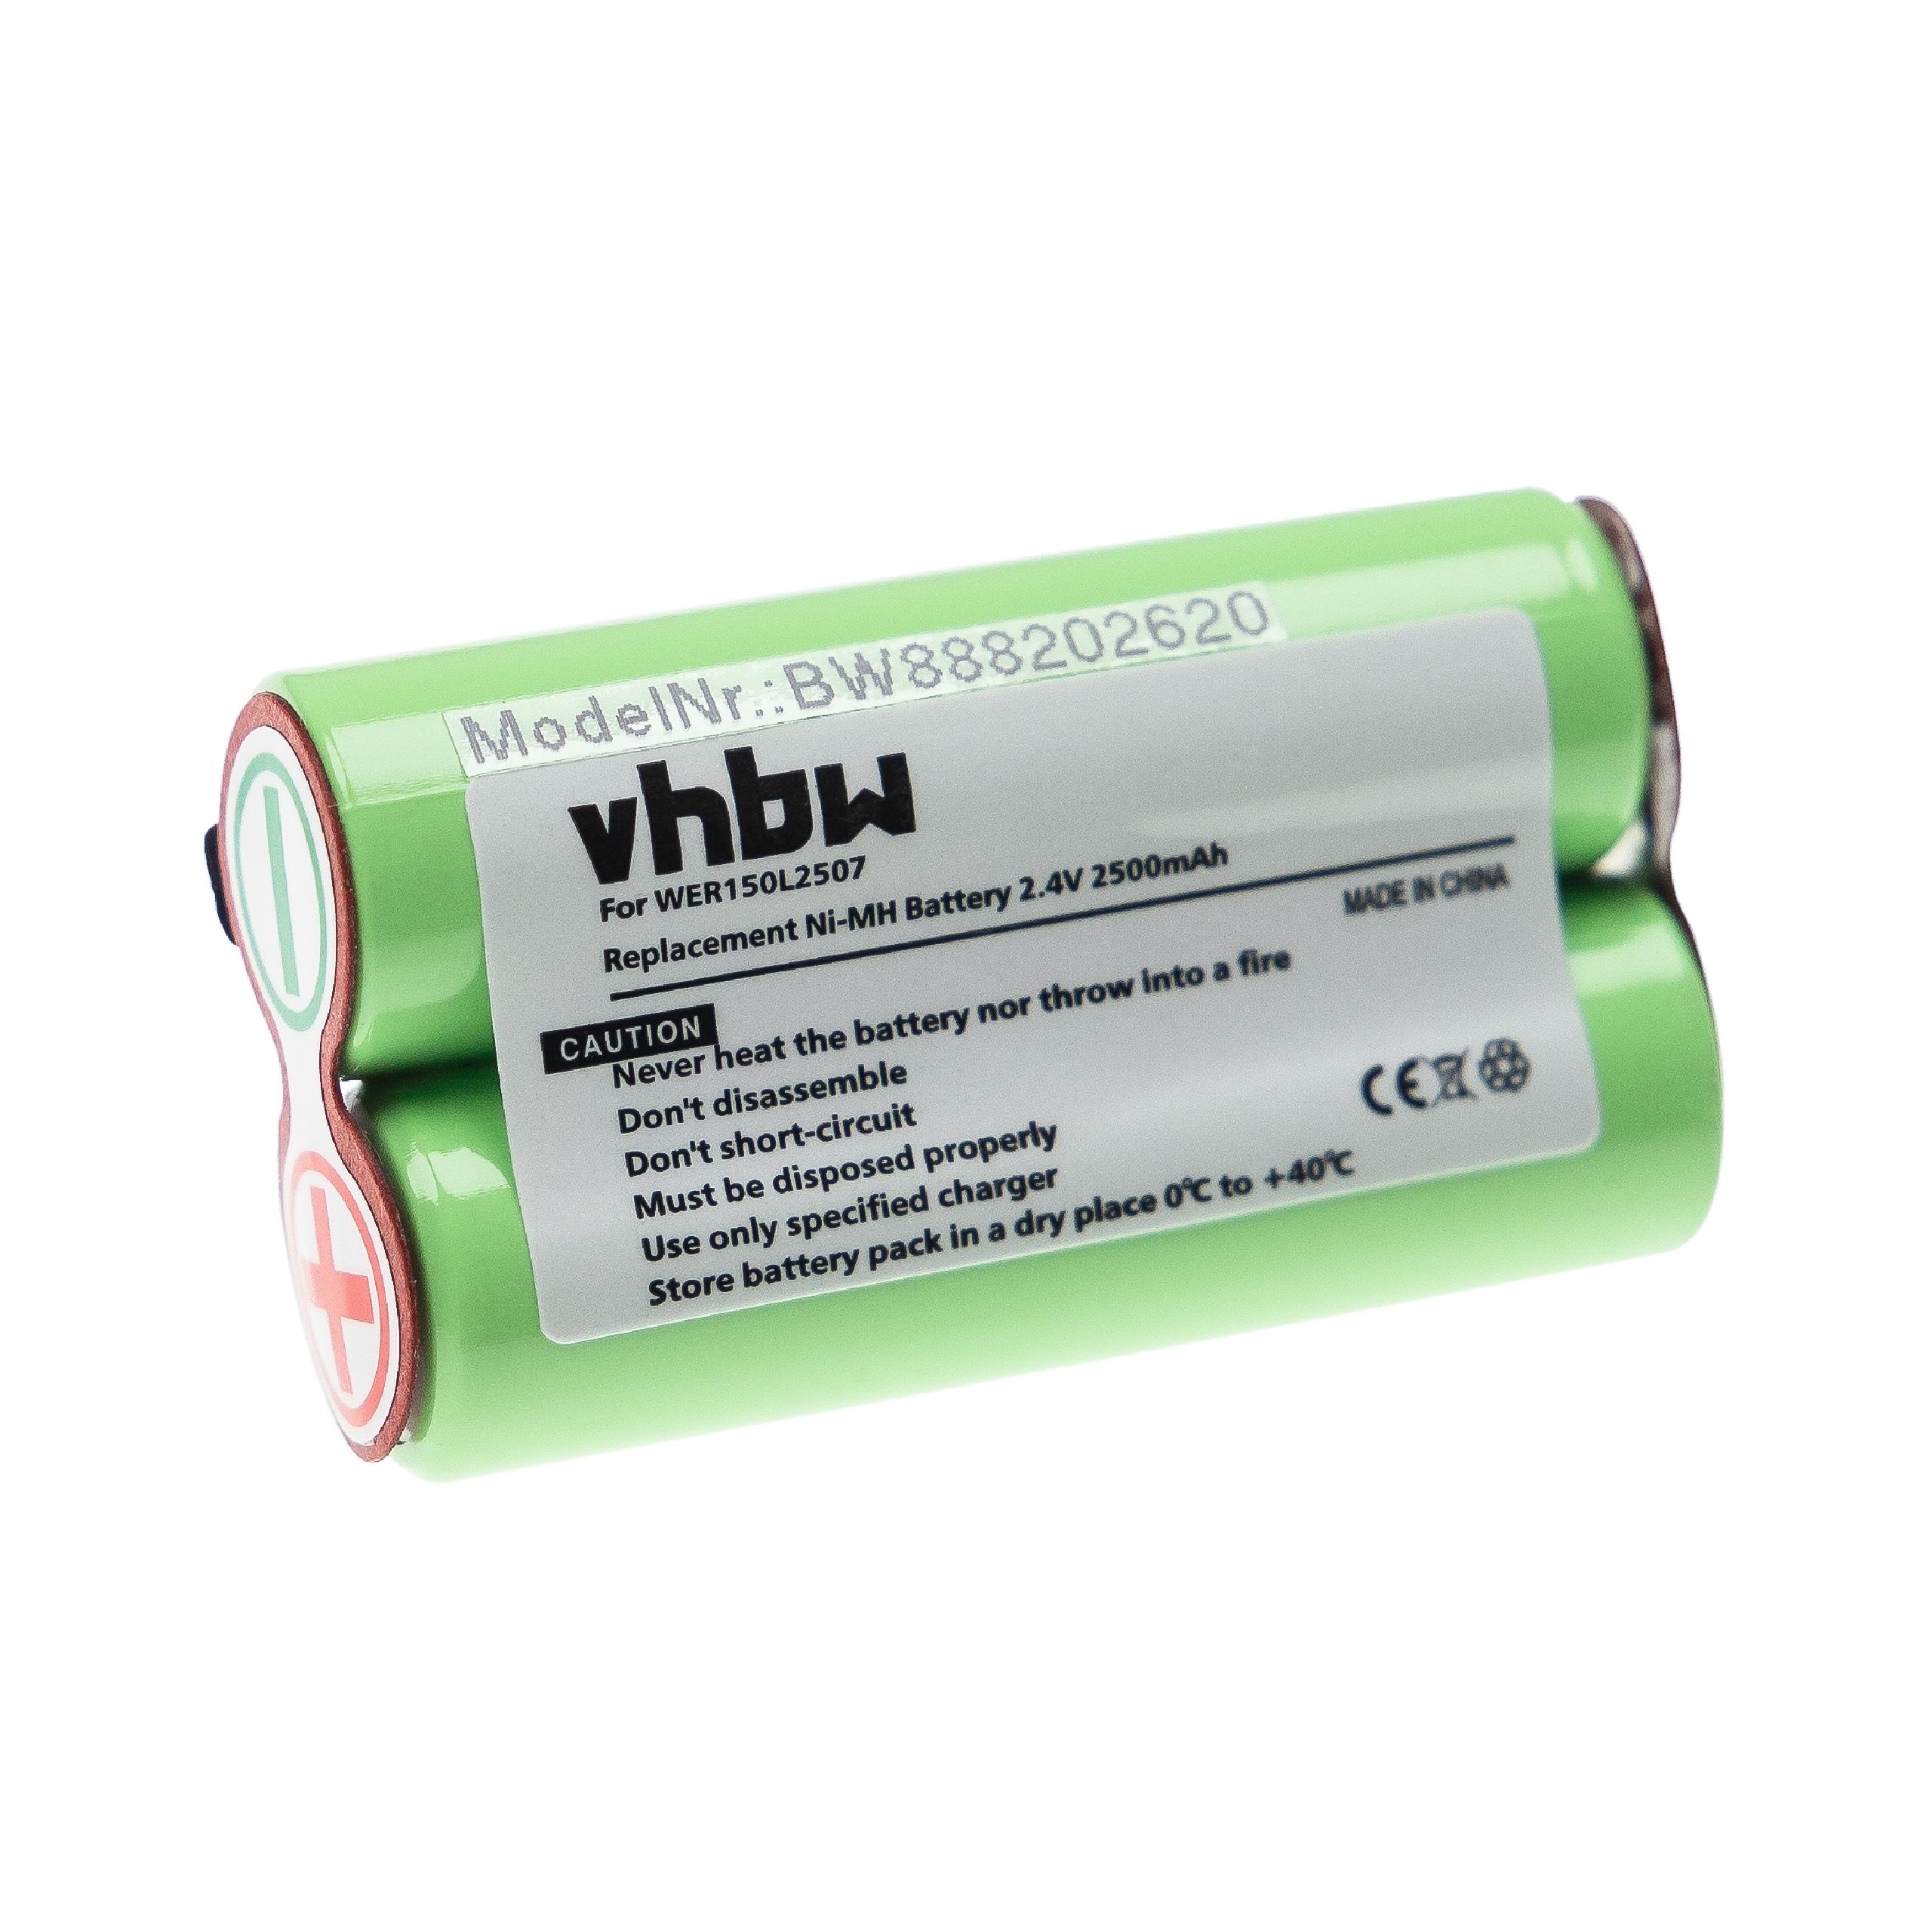 Batterie remplace Panasonic WER150L2507 pour rasoir électrique - 2500mAh 2,4V NiMH